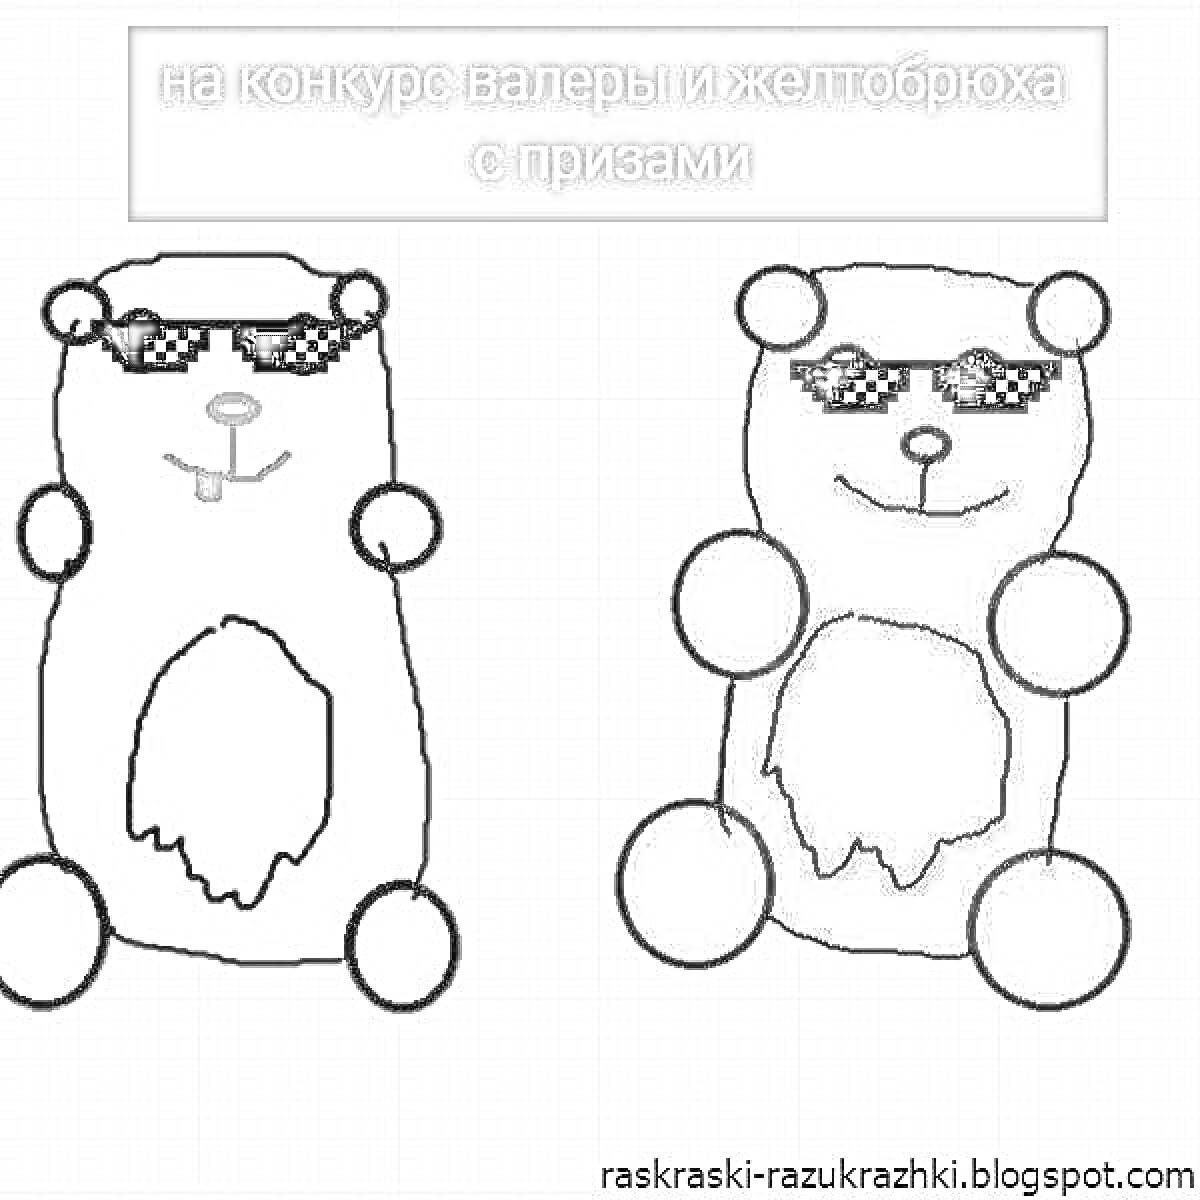 Два медведя в очках: один жёлтый медведь с красными глазами и ушами, красным носом и языком, второй красный медведь с чёрными глазами, носом, ушами и лапами